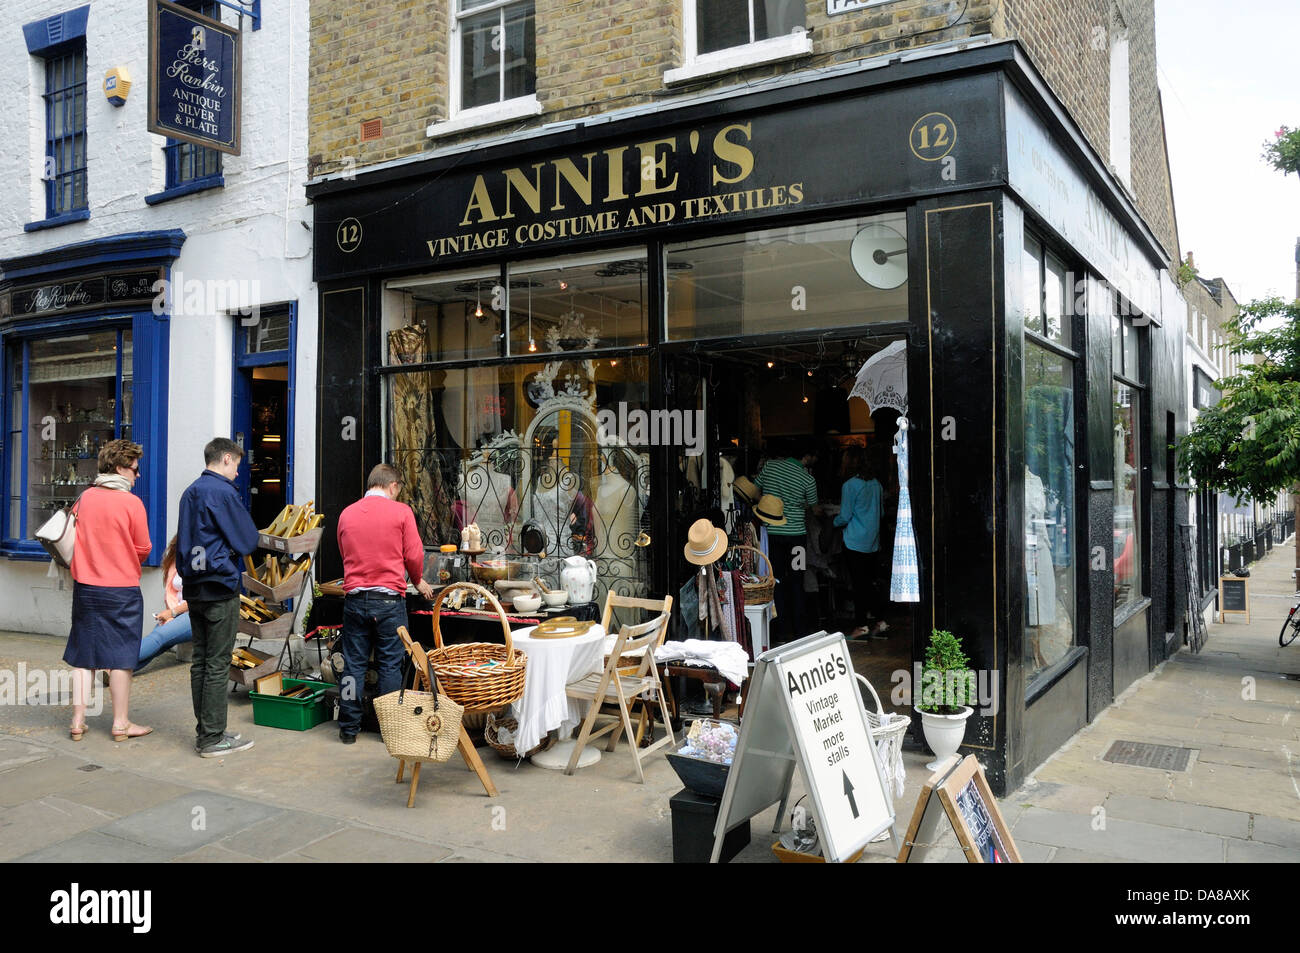 Annie's Vintage Costume et textiles, boutique Camden Passage, Islington,  Londres, Angleterre, Royaume-Uni Photo Stock - Alamy